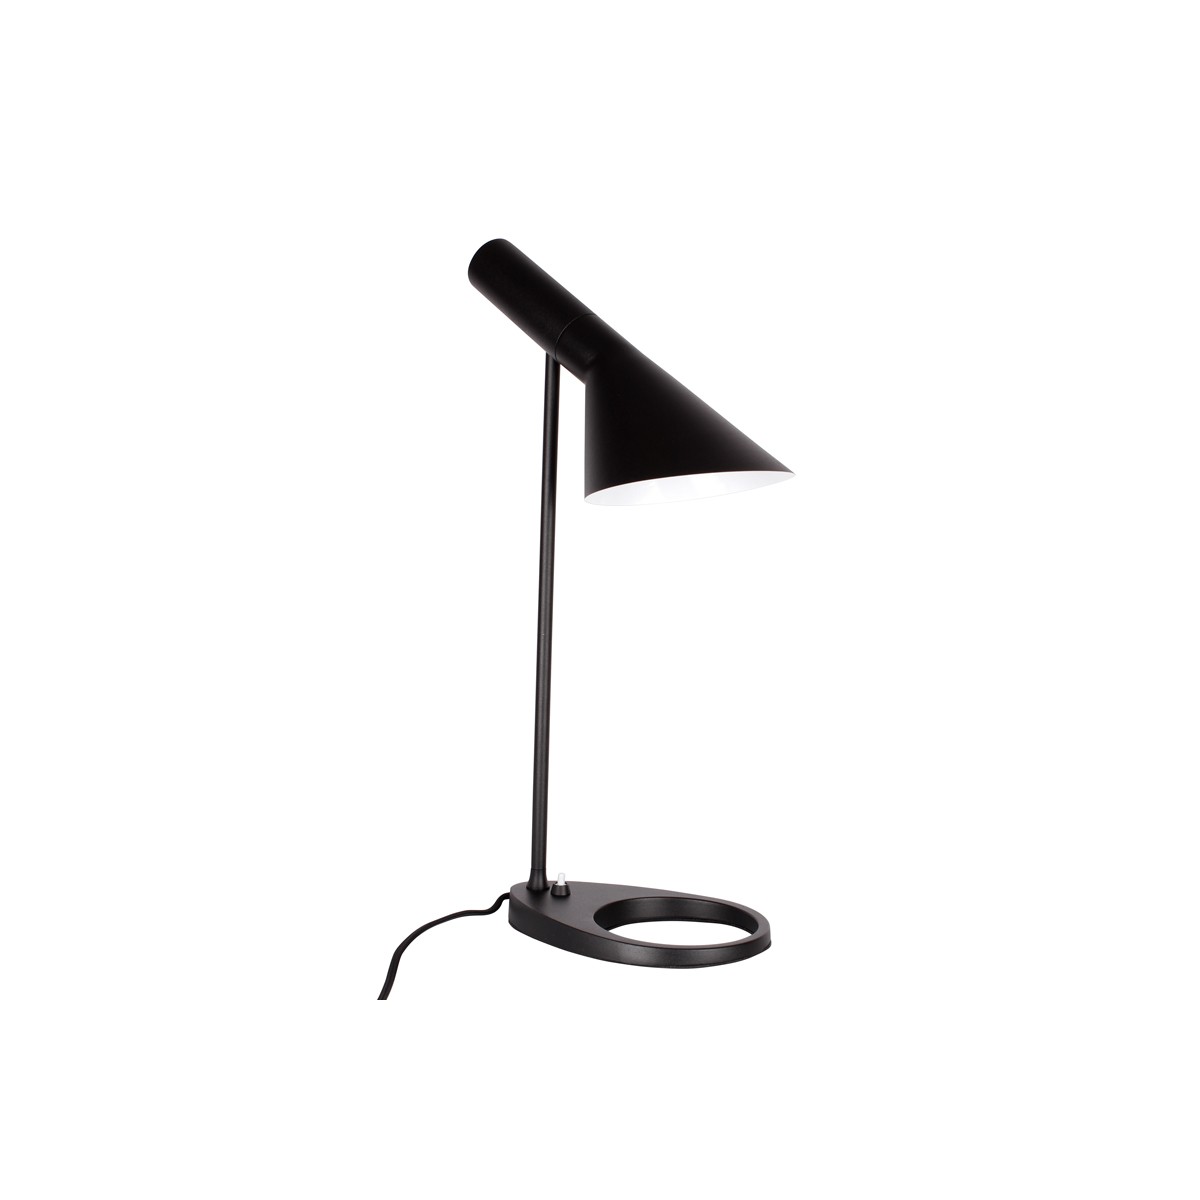 Design table lamp "Marlene"